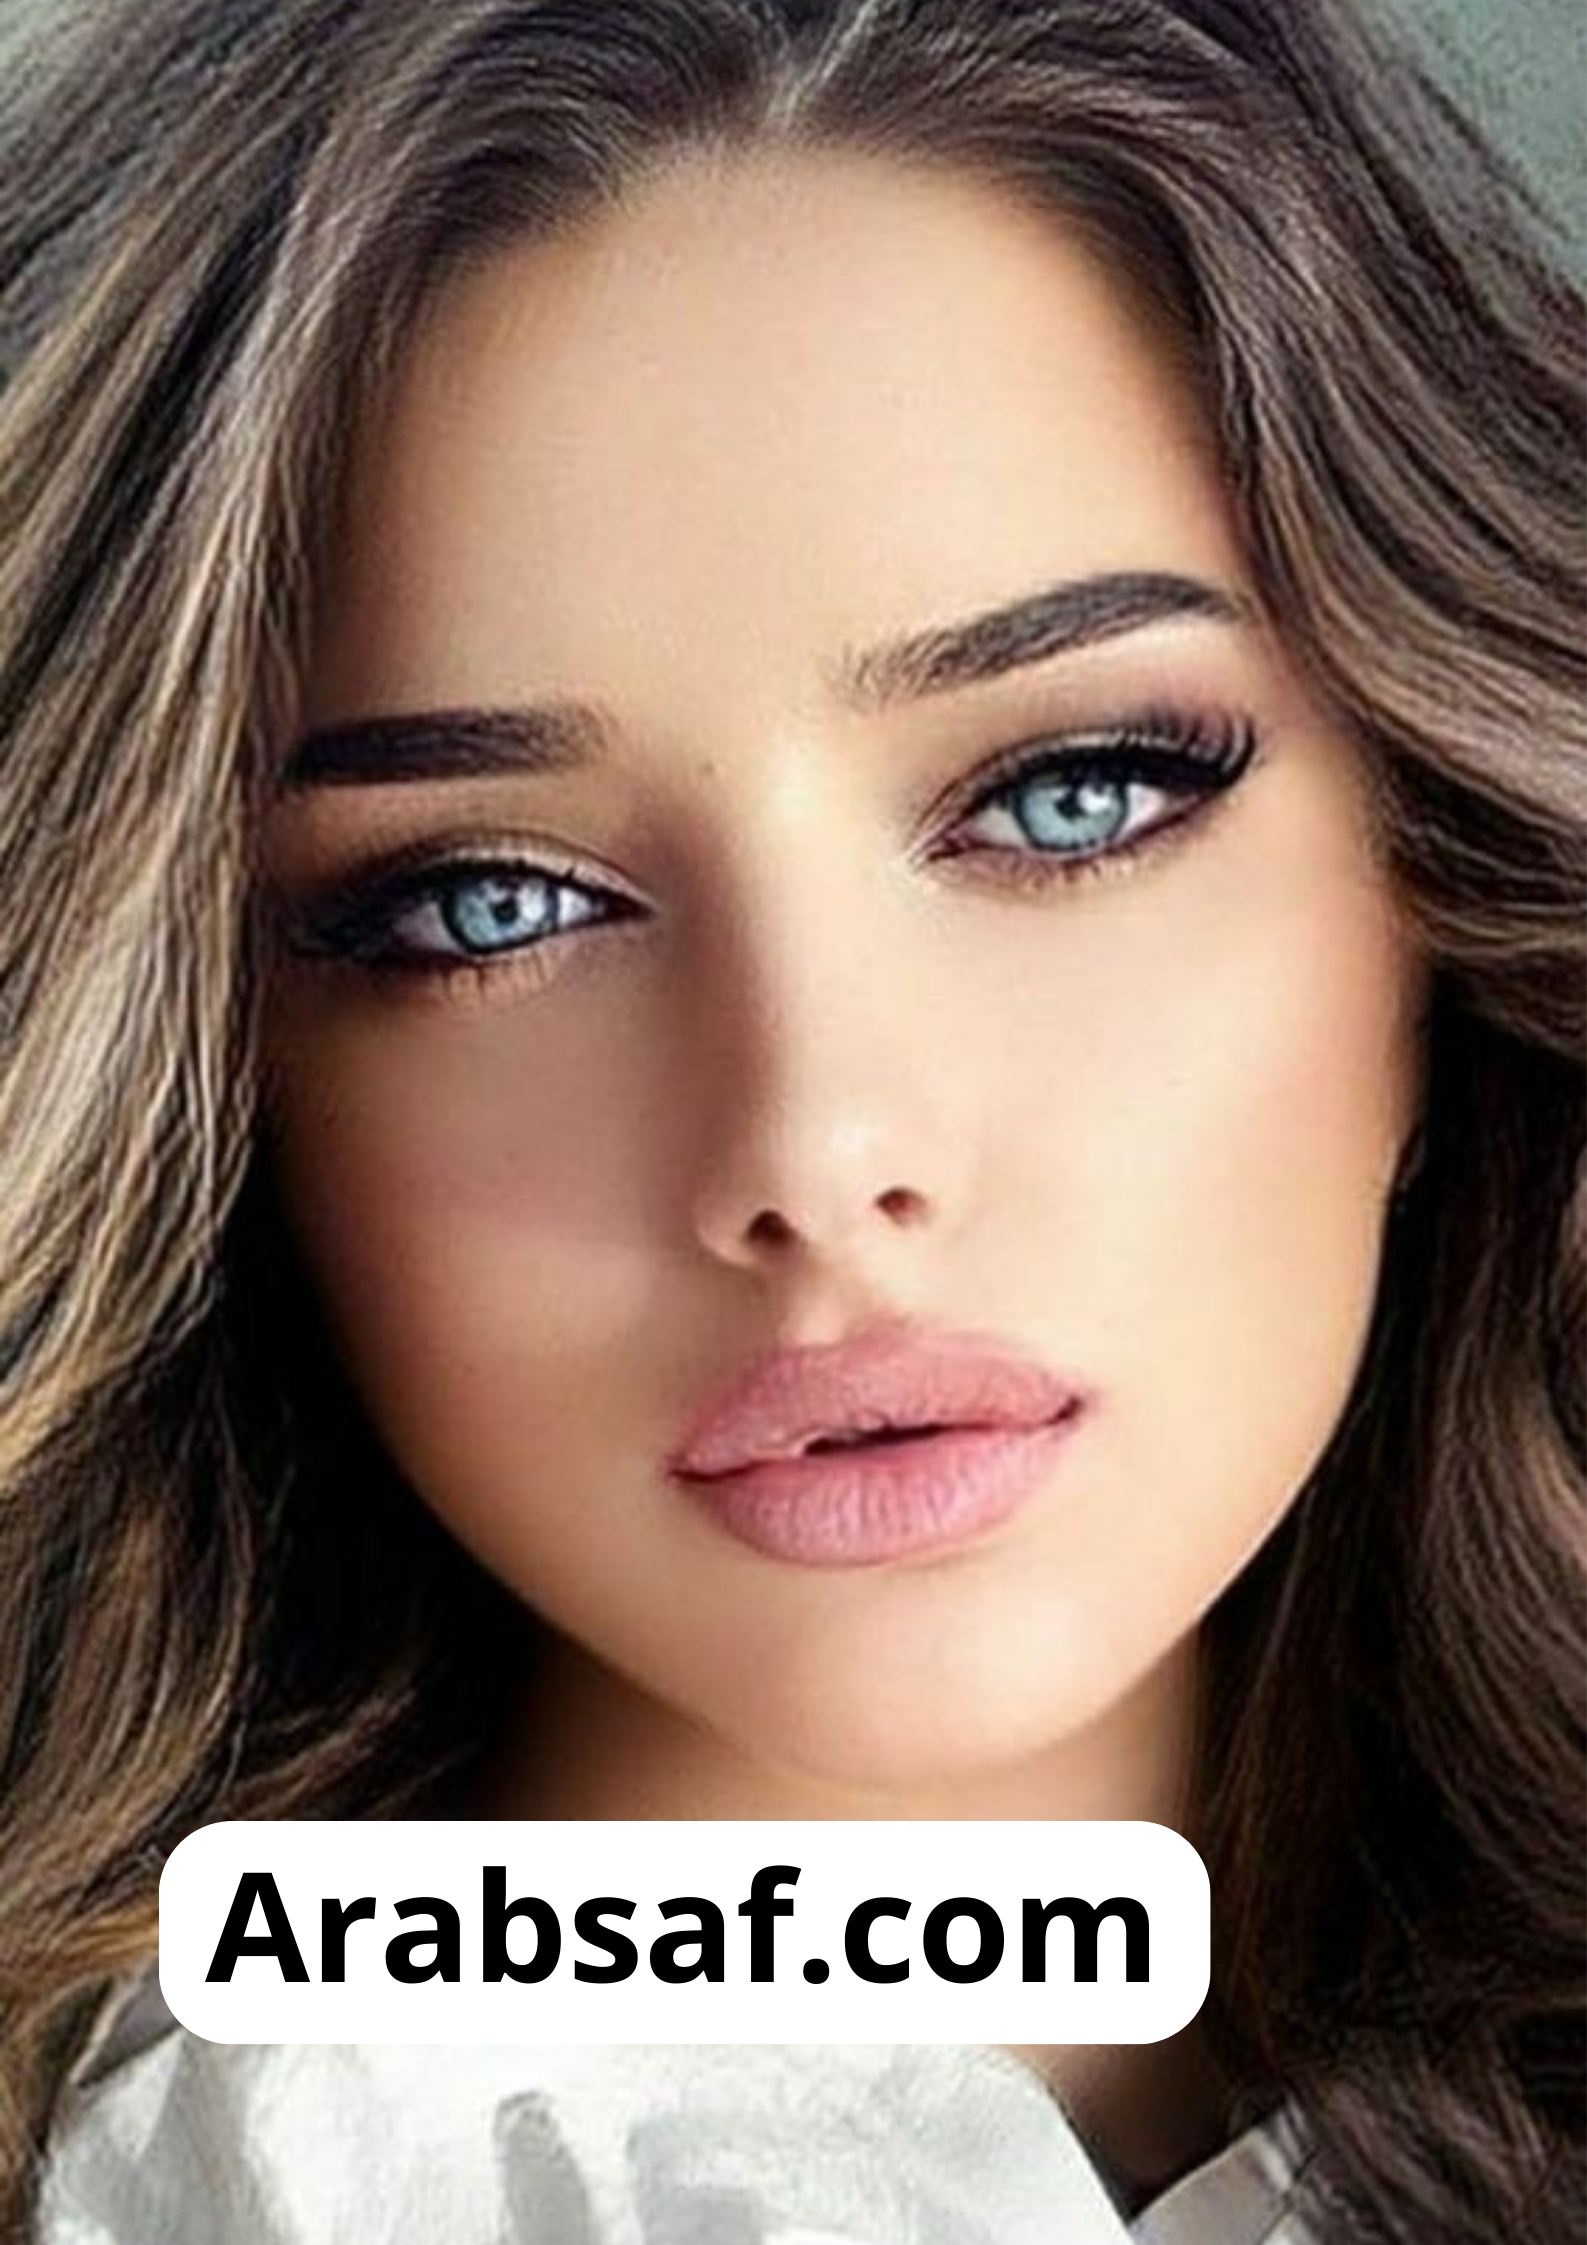 Arabsaf.com (3)